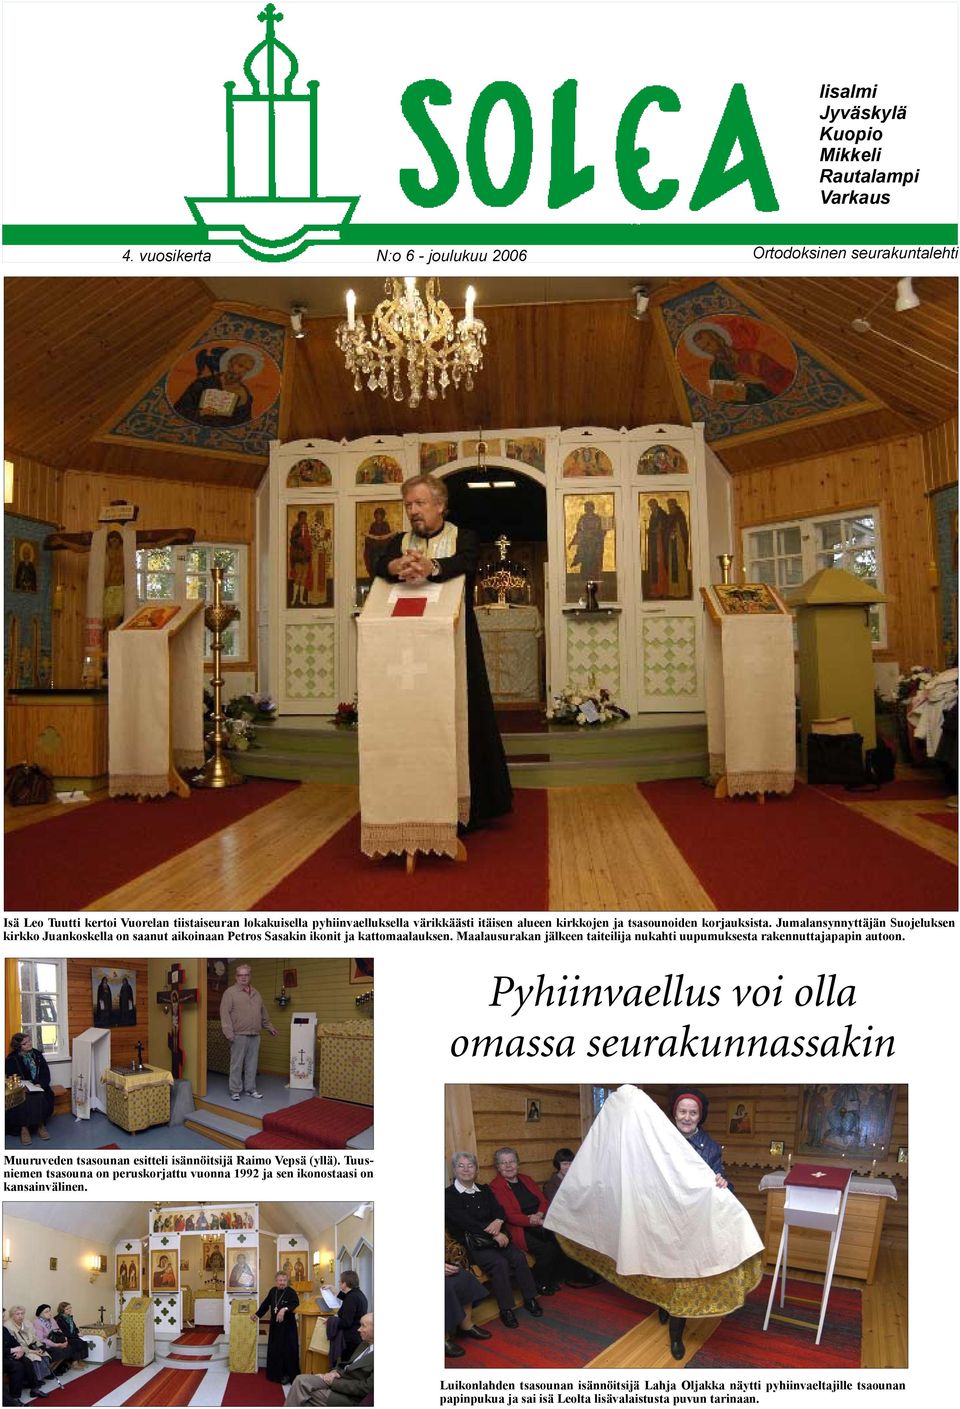 korjauksista. Jumalansynnyttäjän Suojeluksen kirkko Juankoskella on saanut aikoinaan Petros Sasakin ikonit ja kattomaalauksen.